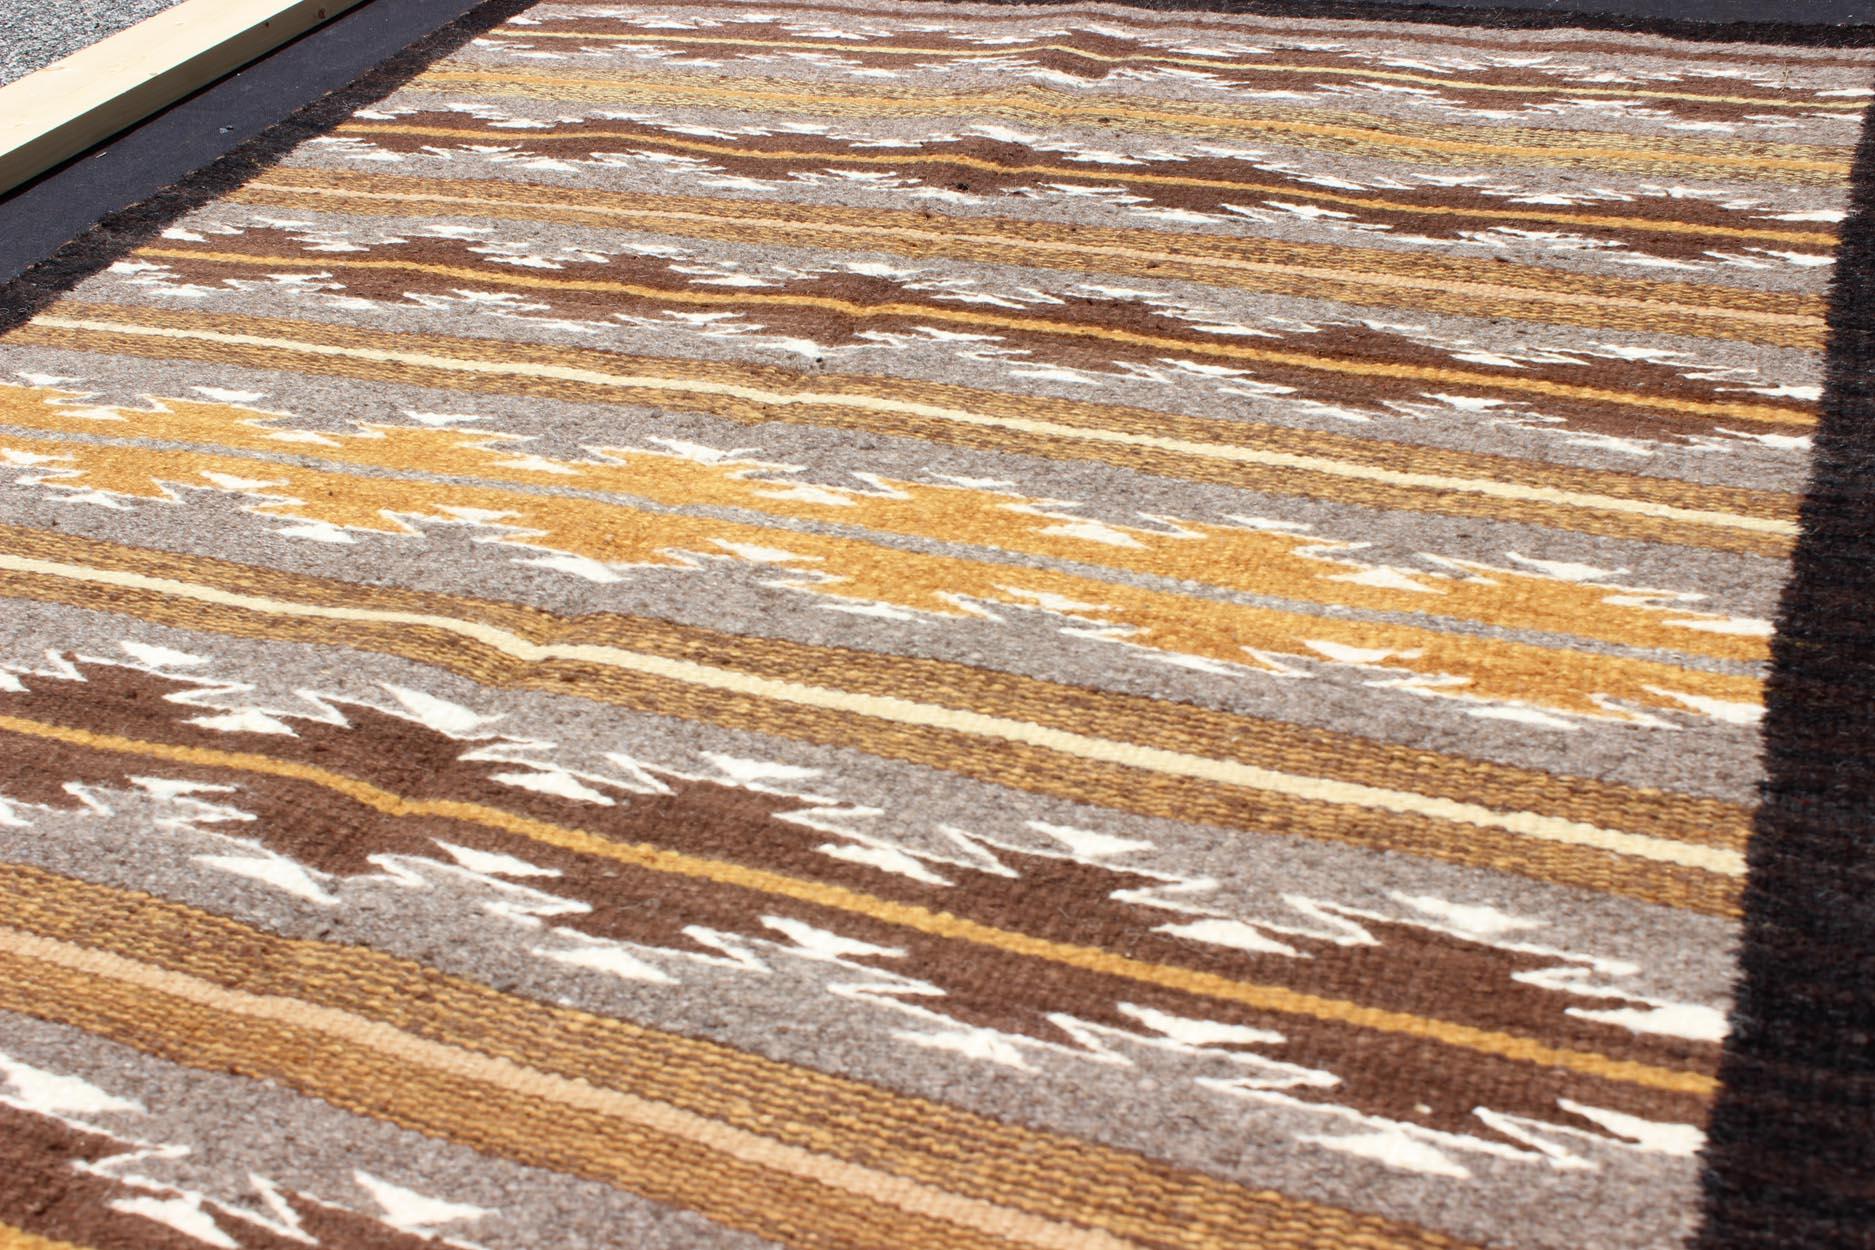 Hand-Woven Earthy Tones USA Navajo Kilim rug with Black Border Tribal Design For Sale